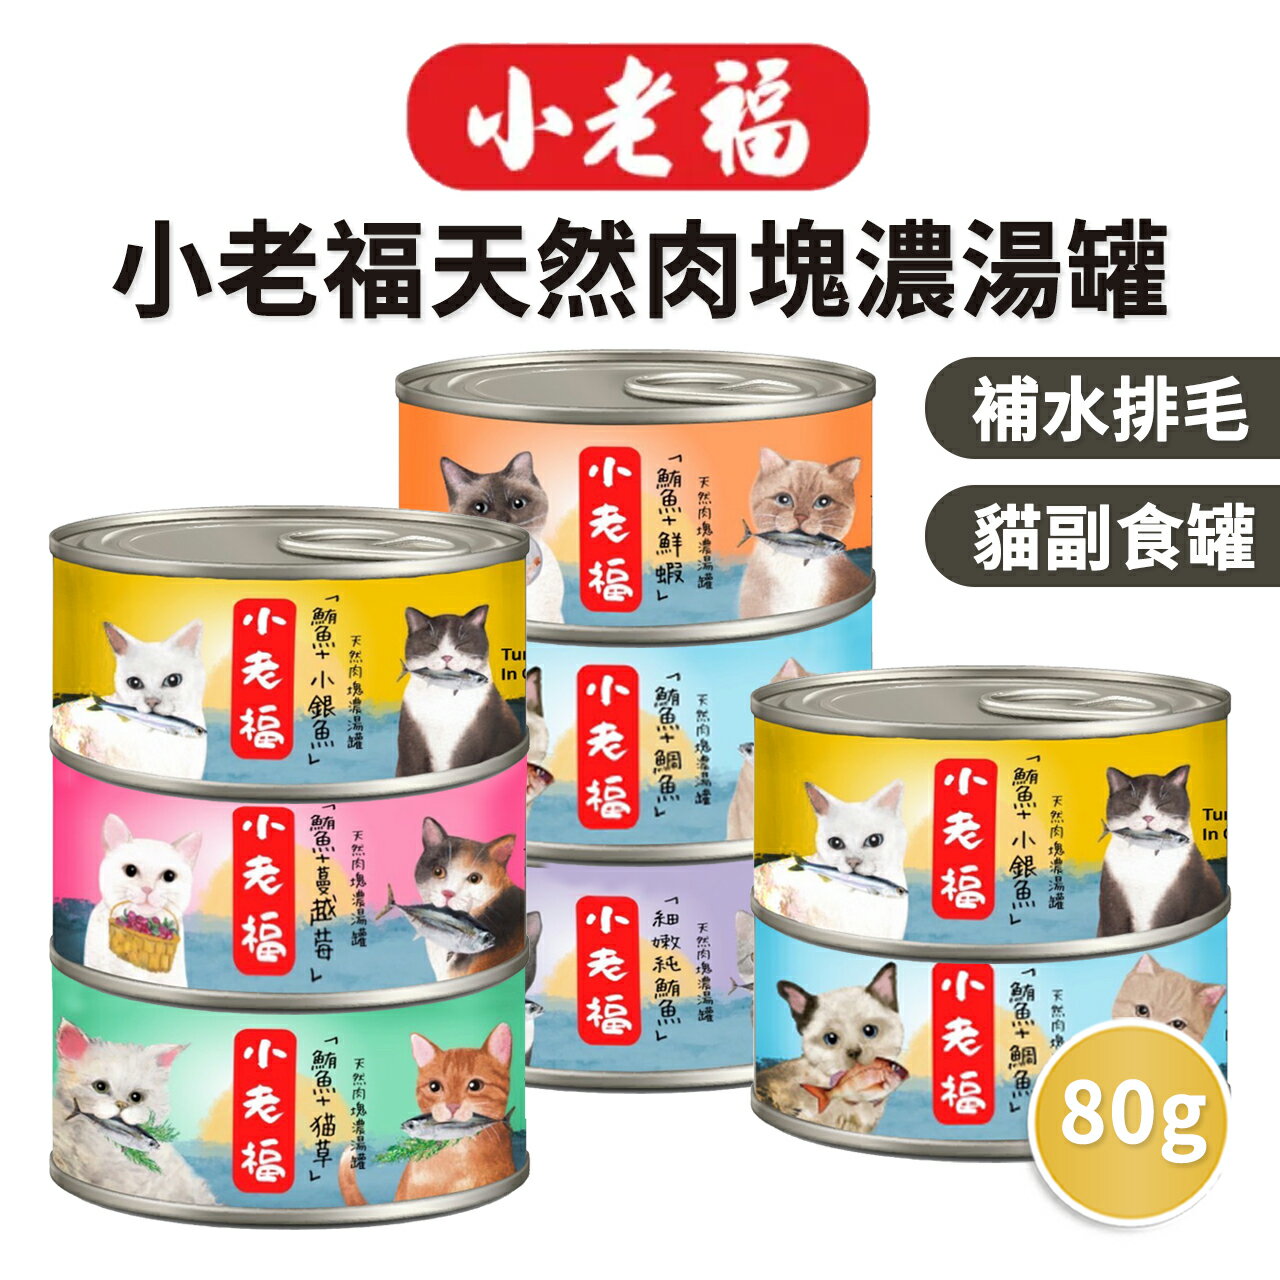 【PETMART】小老福濃湯罐 貓罐頭 副食罐 貓咪點心 補水罐 貓湯罐 80G